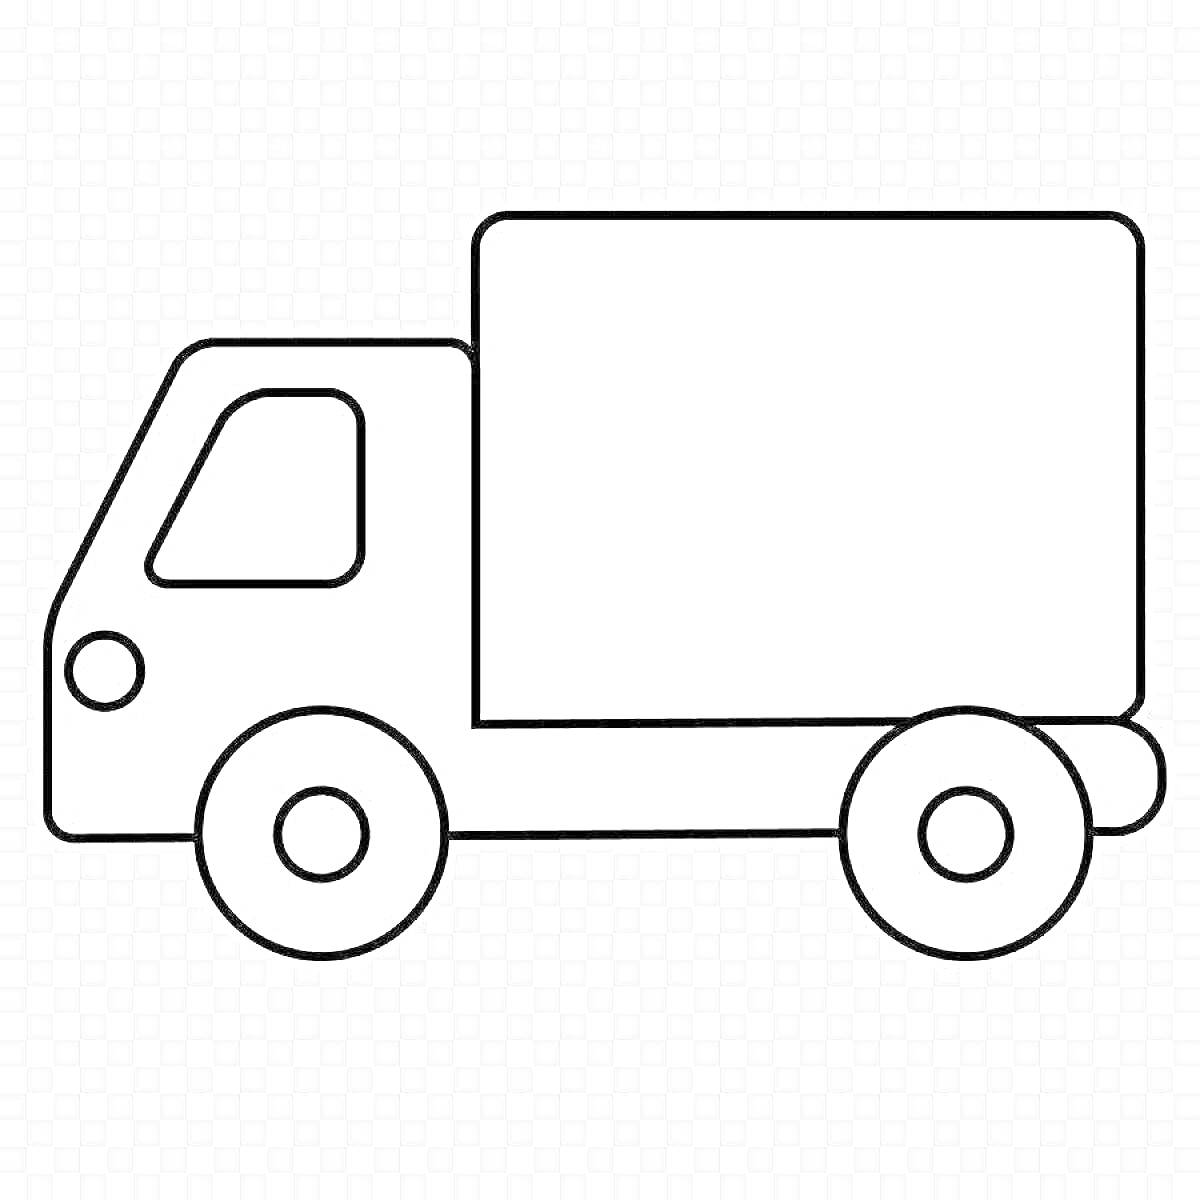 Раскраска Раскраска - грузовая машина с кабиной, двумя колесами и грузовым отсеком